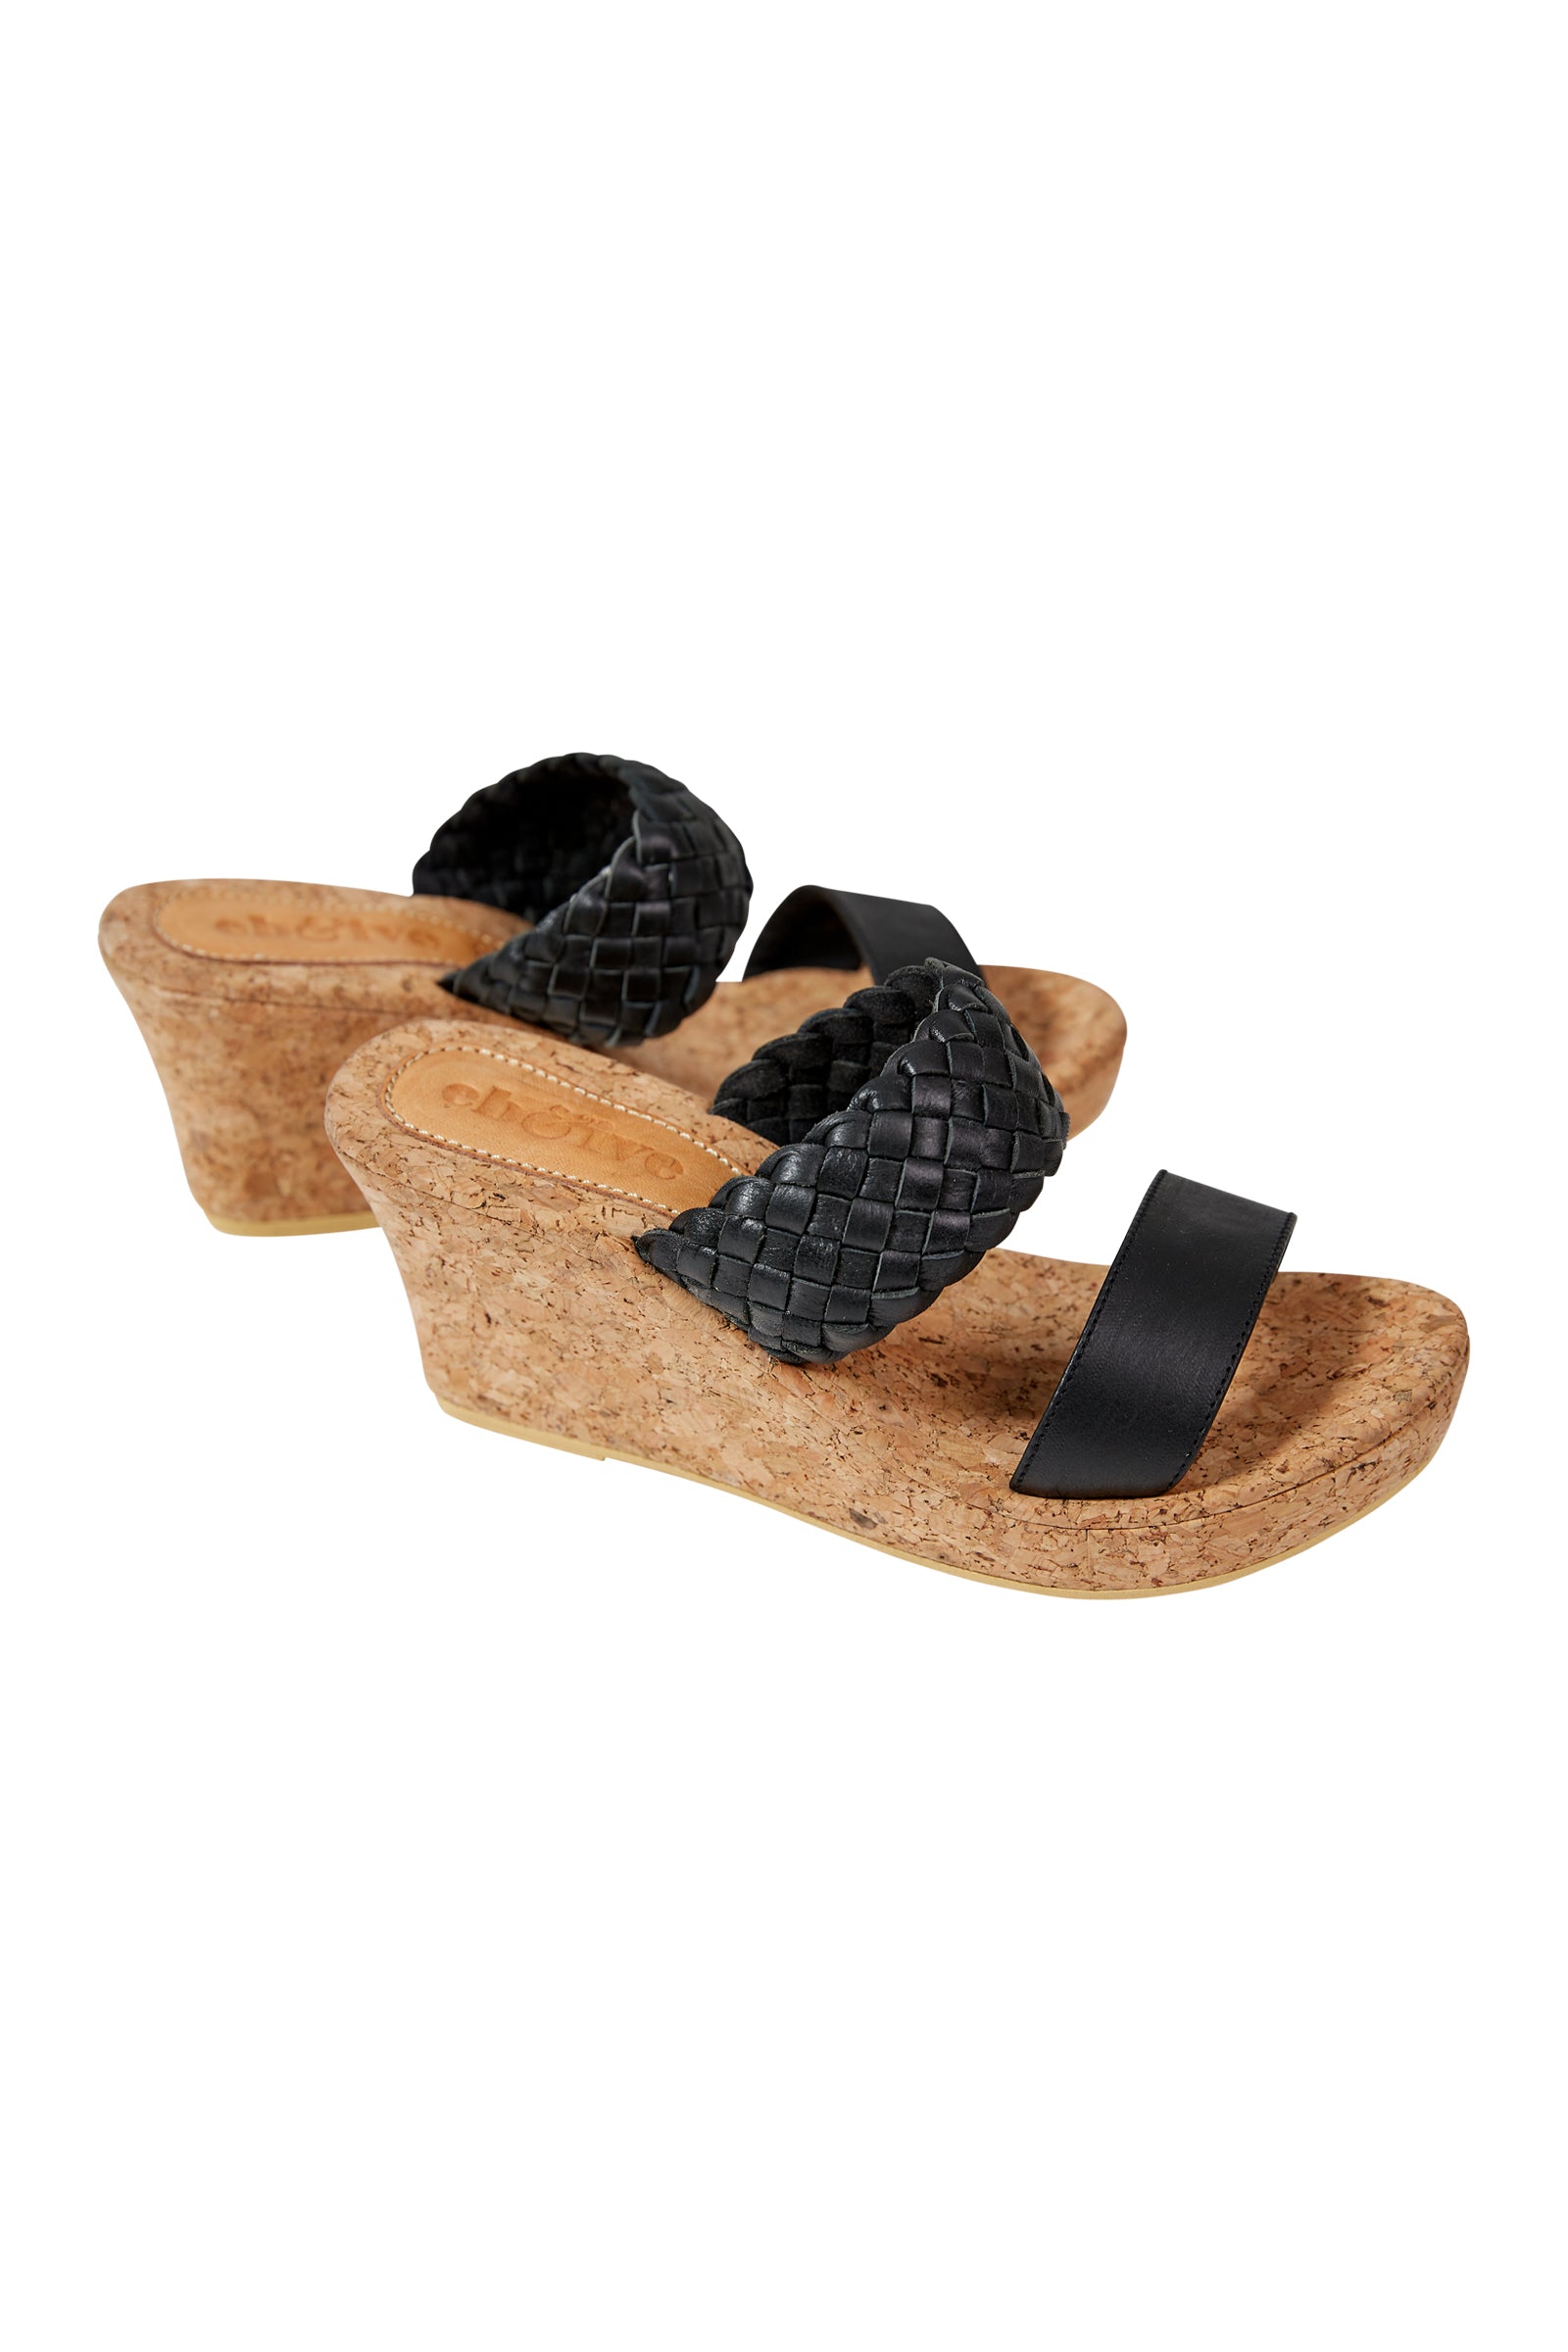 Utopia Wedge - Black - eb&ive Footwear - Sandals